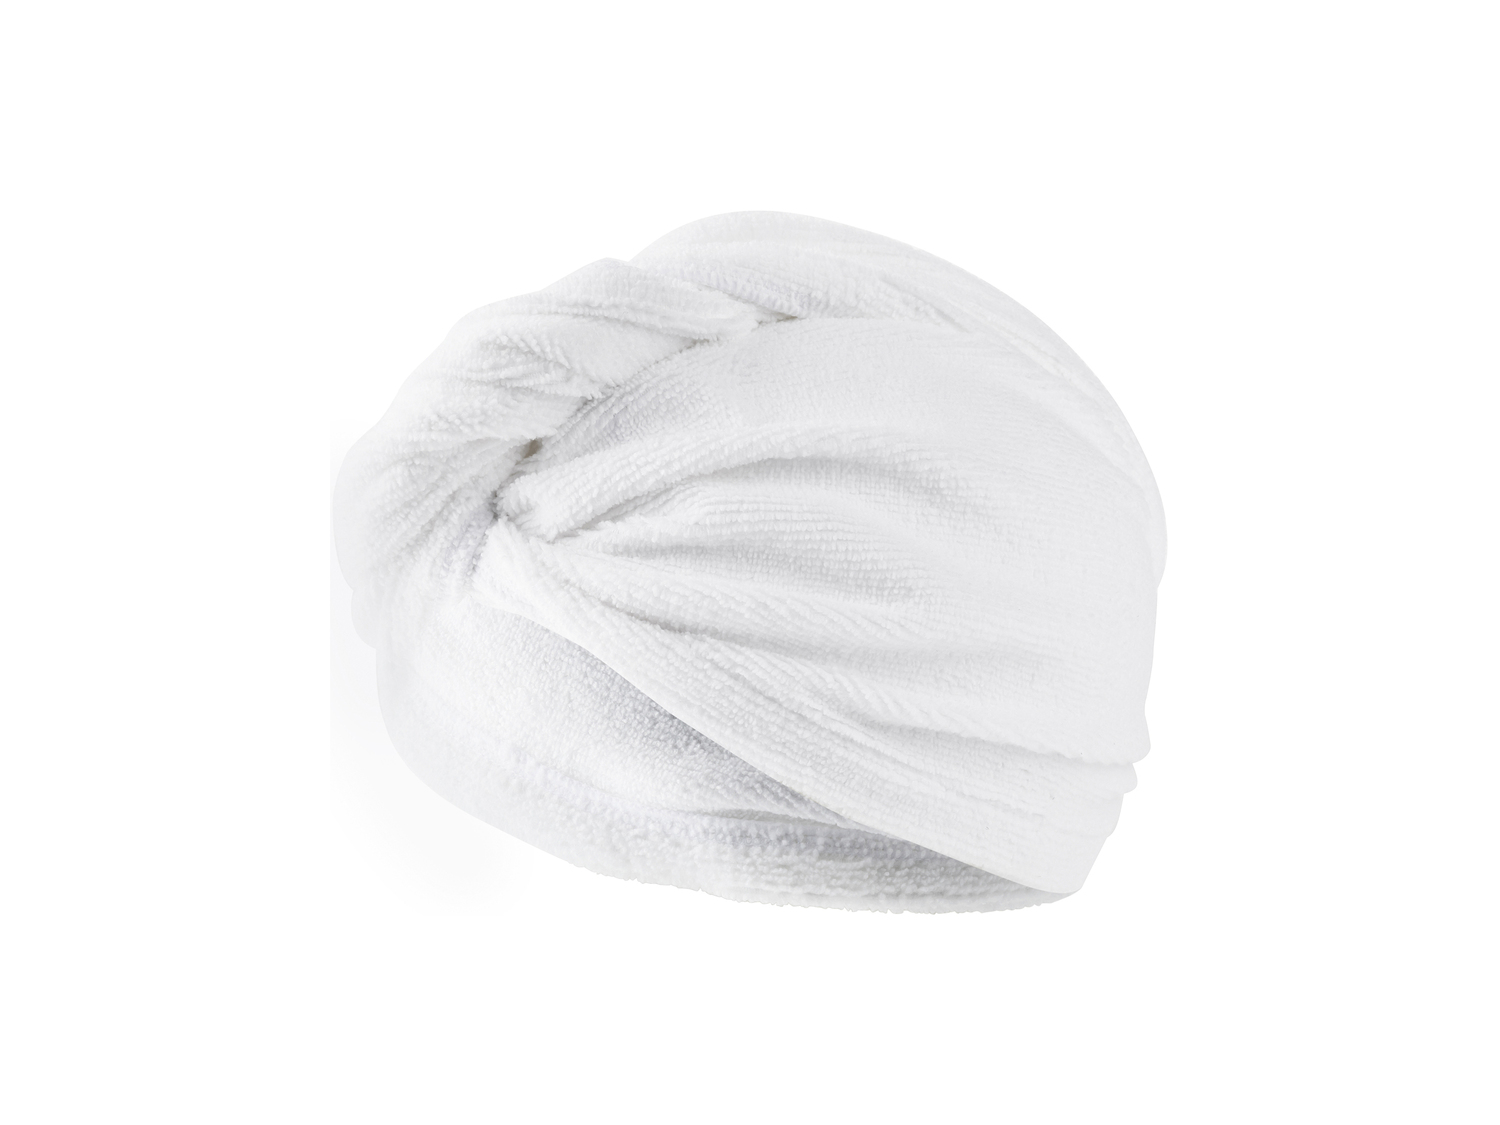 Asciugamano a turbante per capelli Miomare, prezzo 3.99 &#8364; 

Caratteristiche

- ...